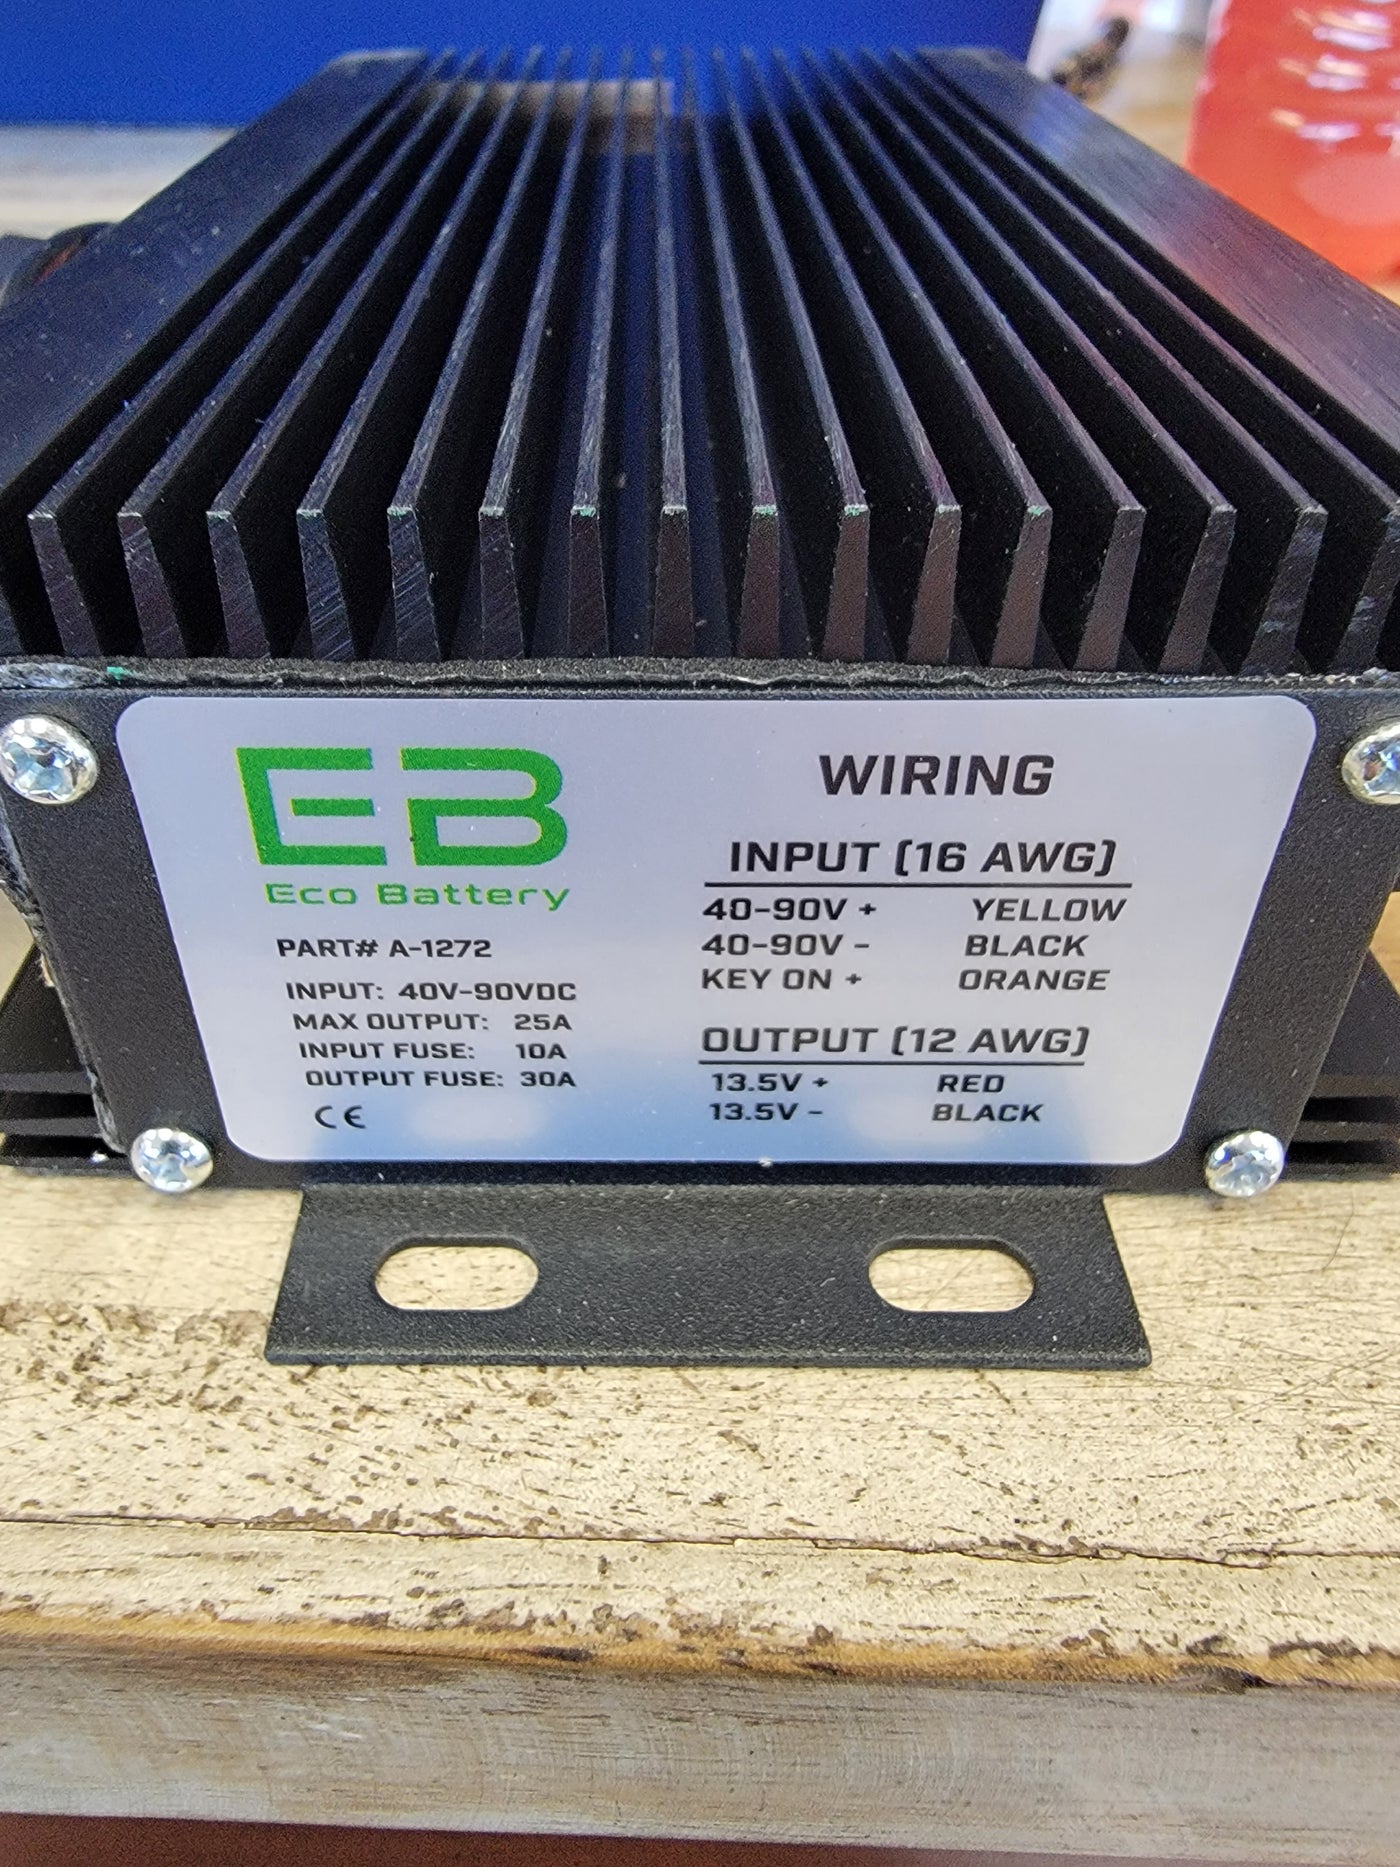 Eco Battery 48-72 Volt to 13.5 Volt 25 Amp Converter Input is Voltage 40V-90V